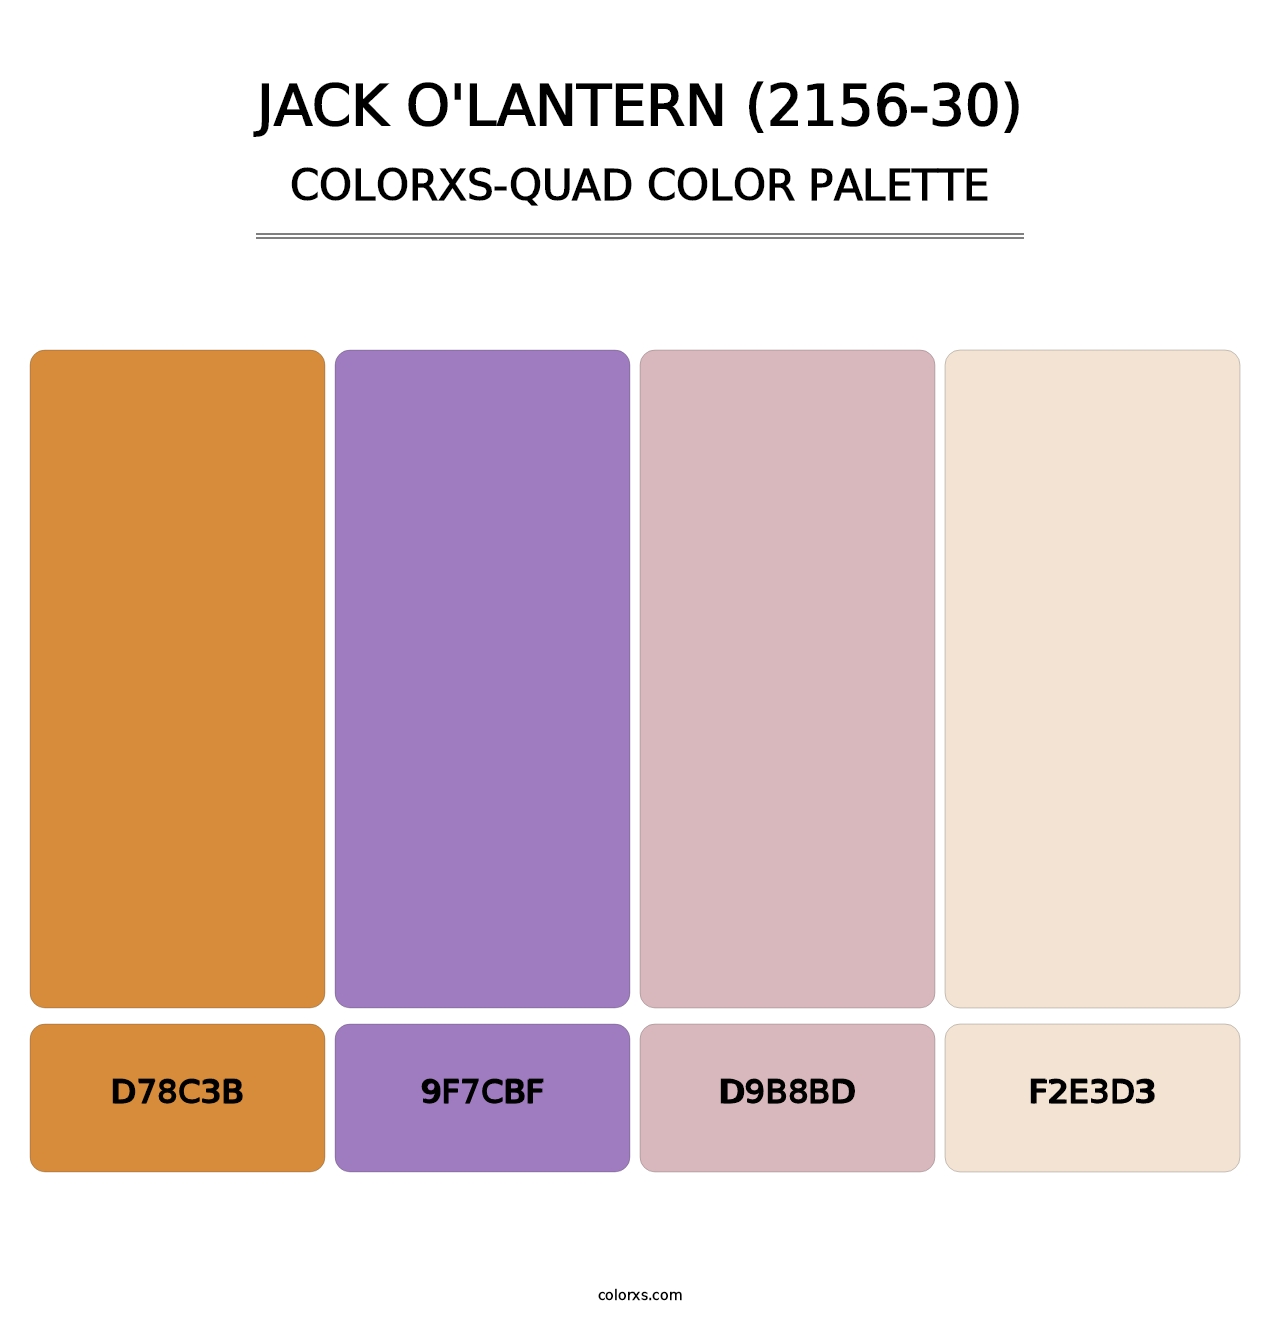 Jack O'Lantern (2156-30) - Colorxs Quad Palette